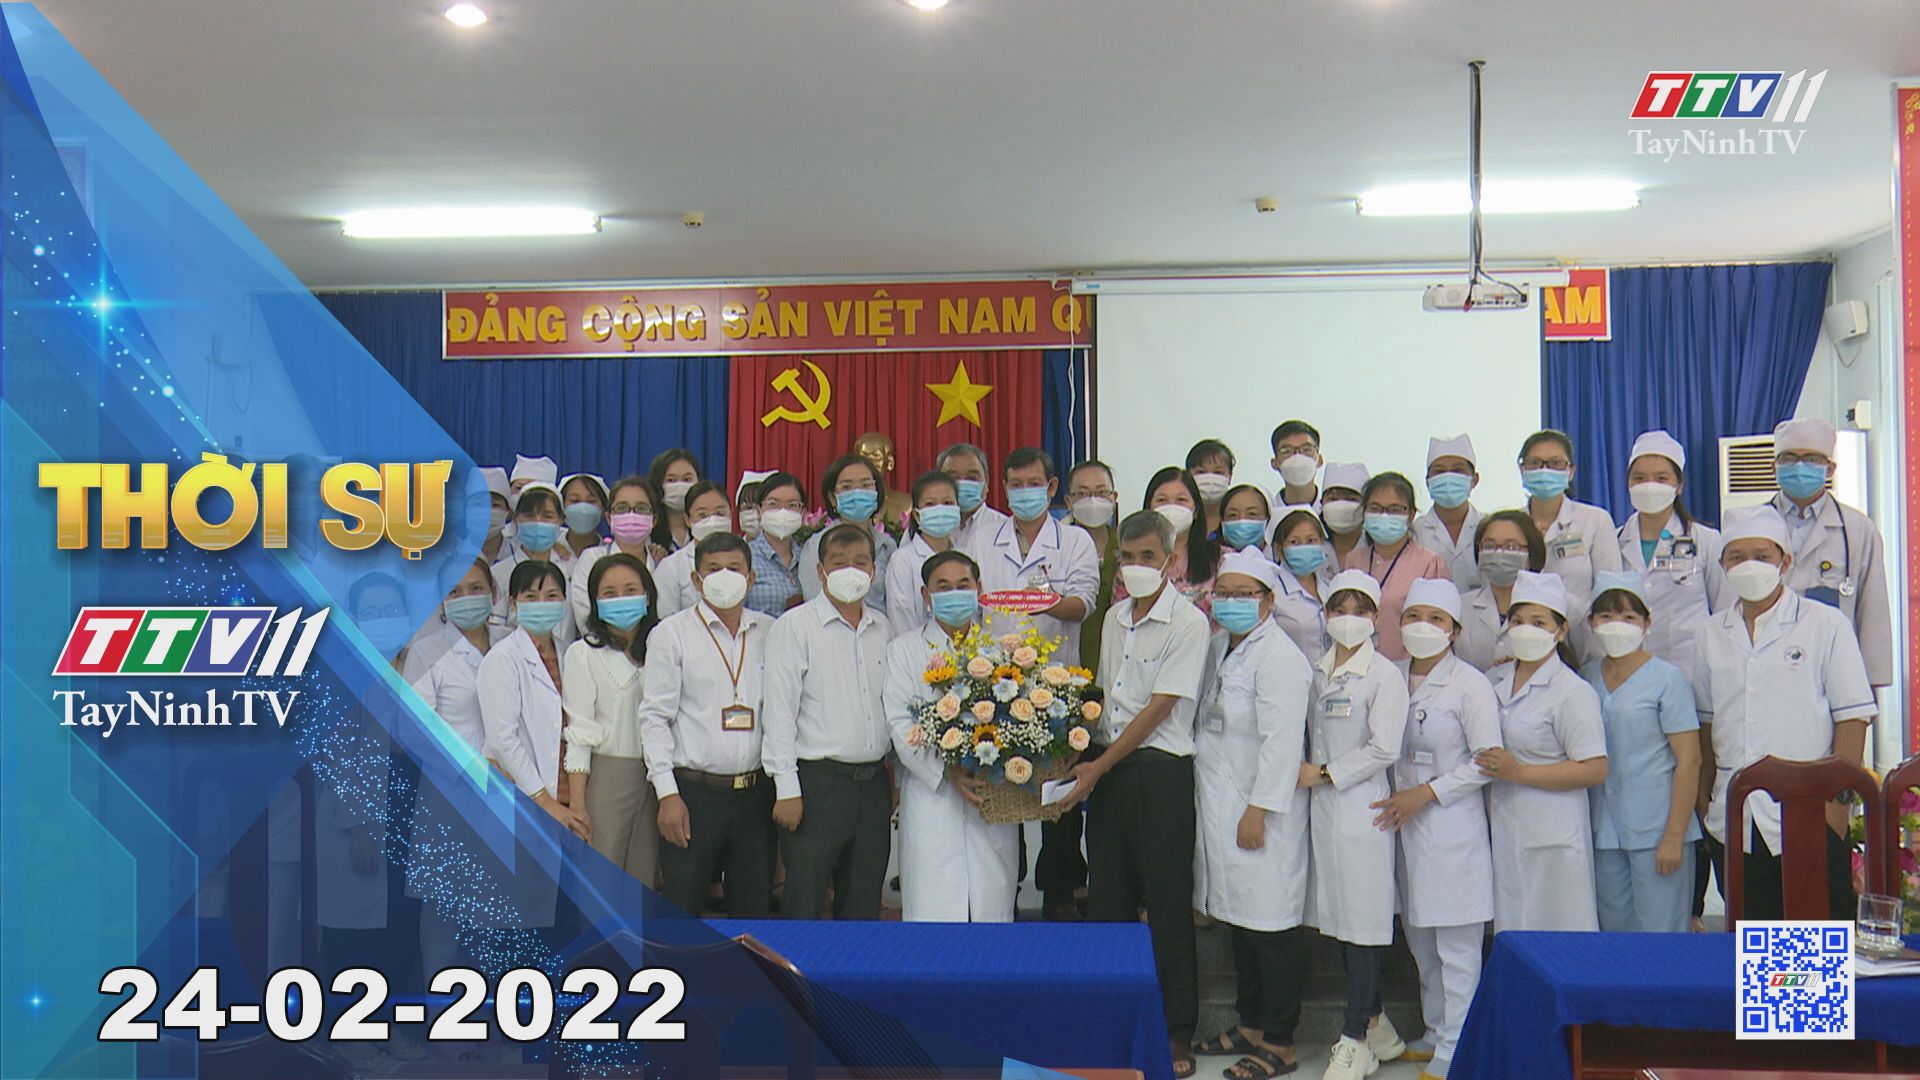 Thời sự Tây Ninh 24-02-2022 | Tin tức hôm nay | TayNinhTV